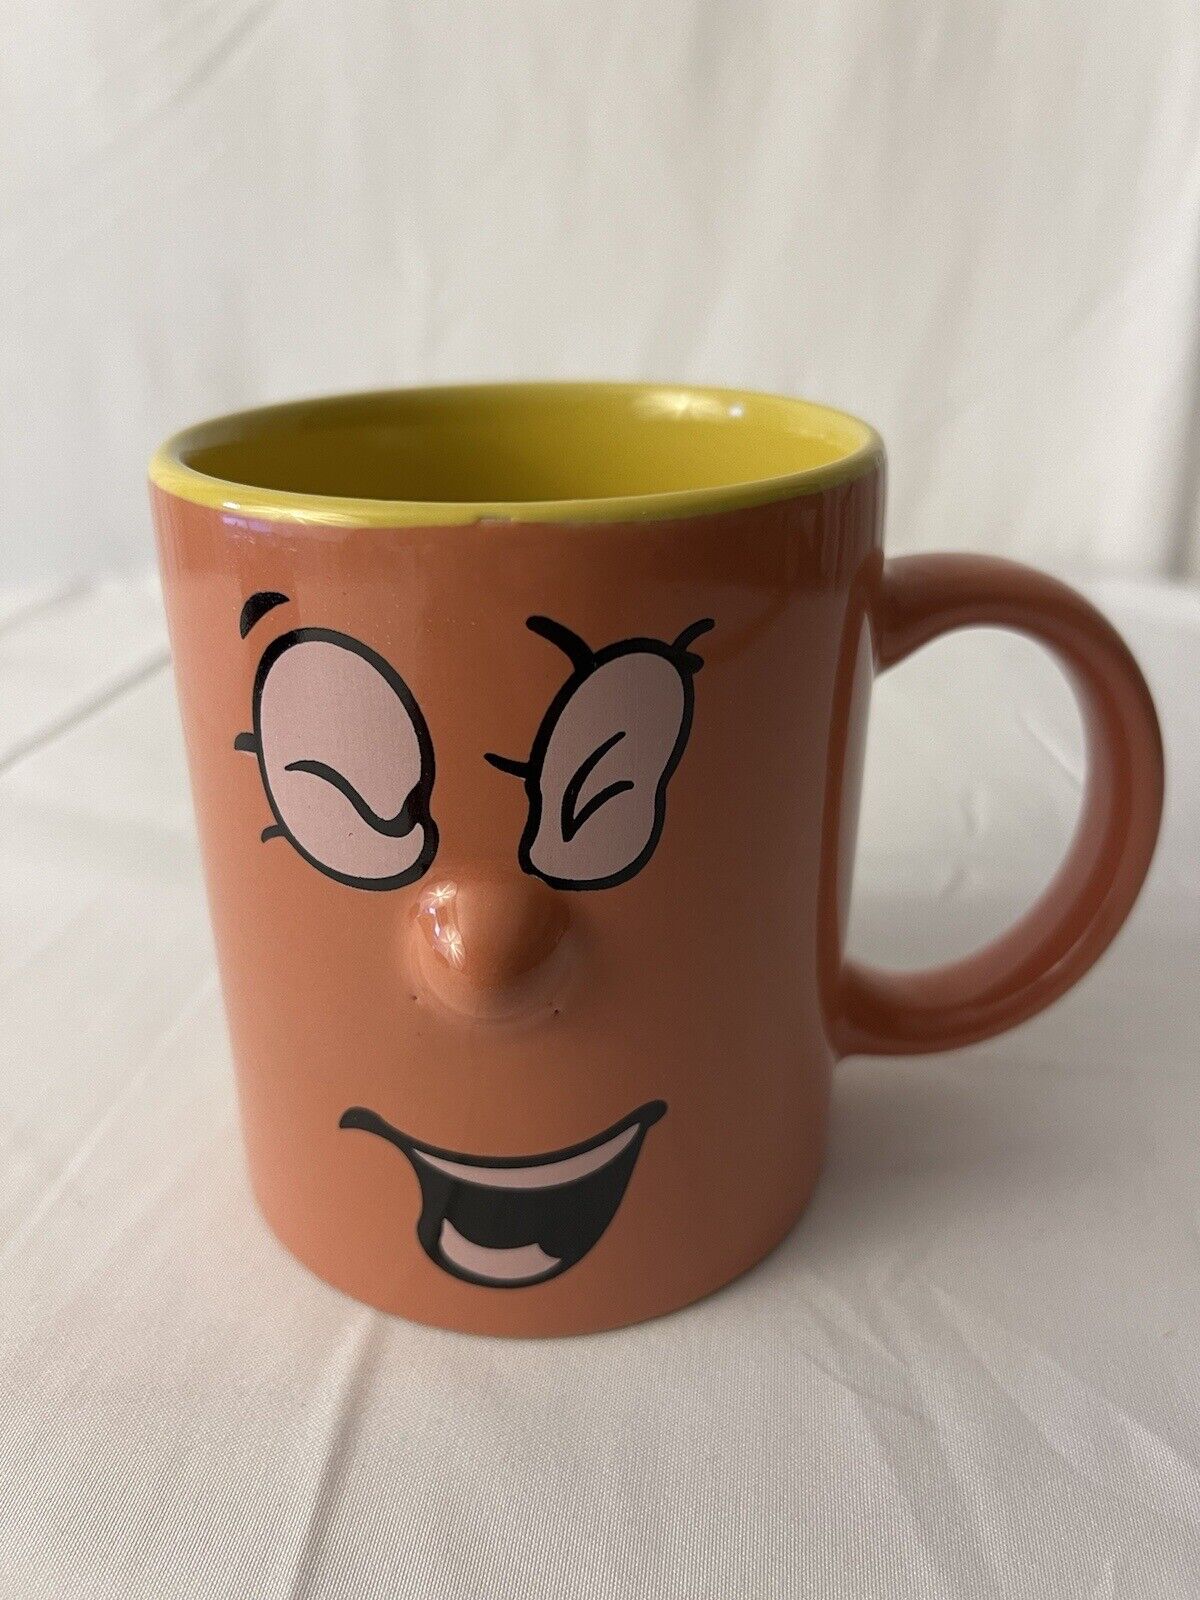 Vintage Pink And Yellow Inside Face Mug Facial Expressions Mug